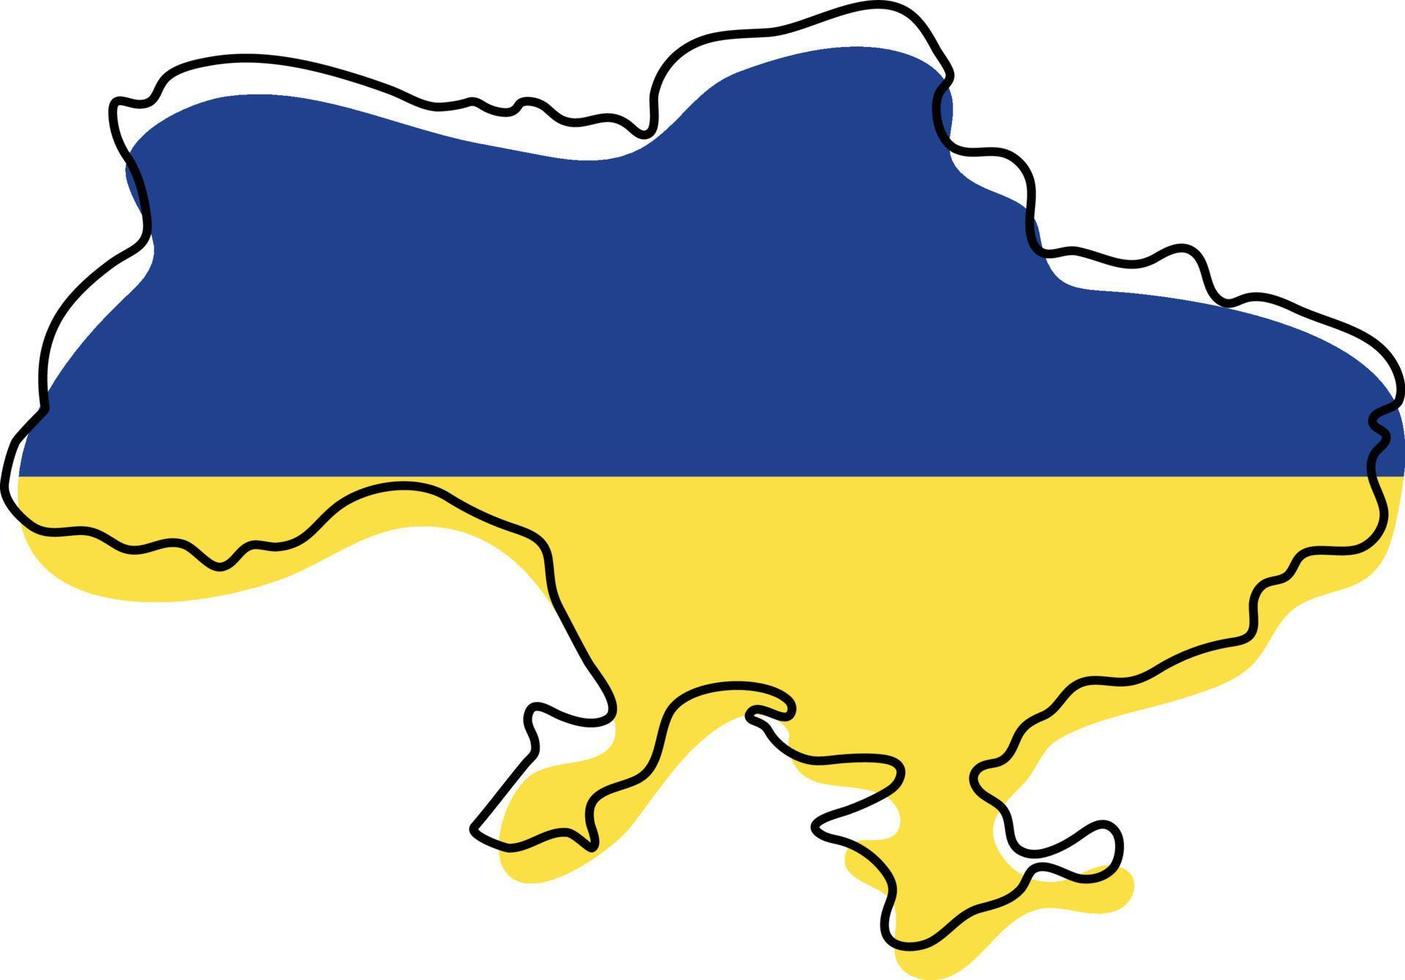 stilisierte umrißkarte der ukraine mit nationalflaggensymbol. Flaggenfarbkarte der ukrainischen Vektorillustration. vektor